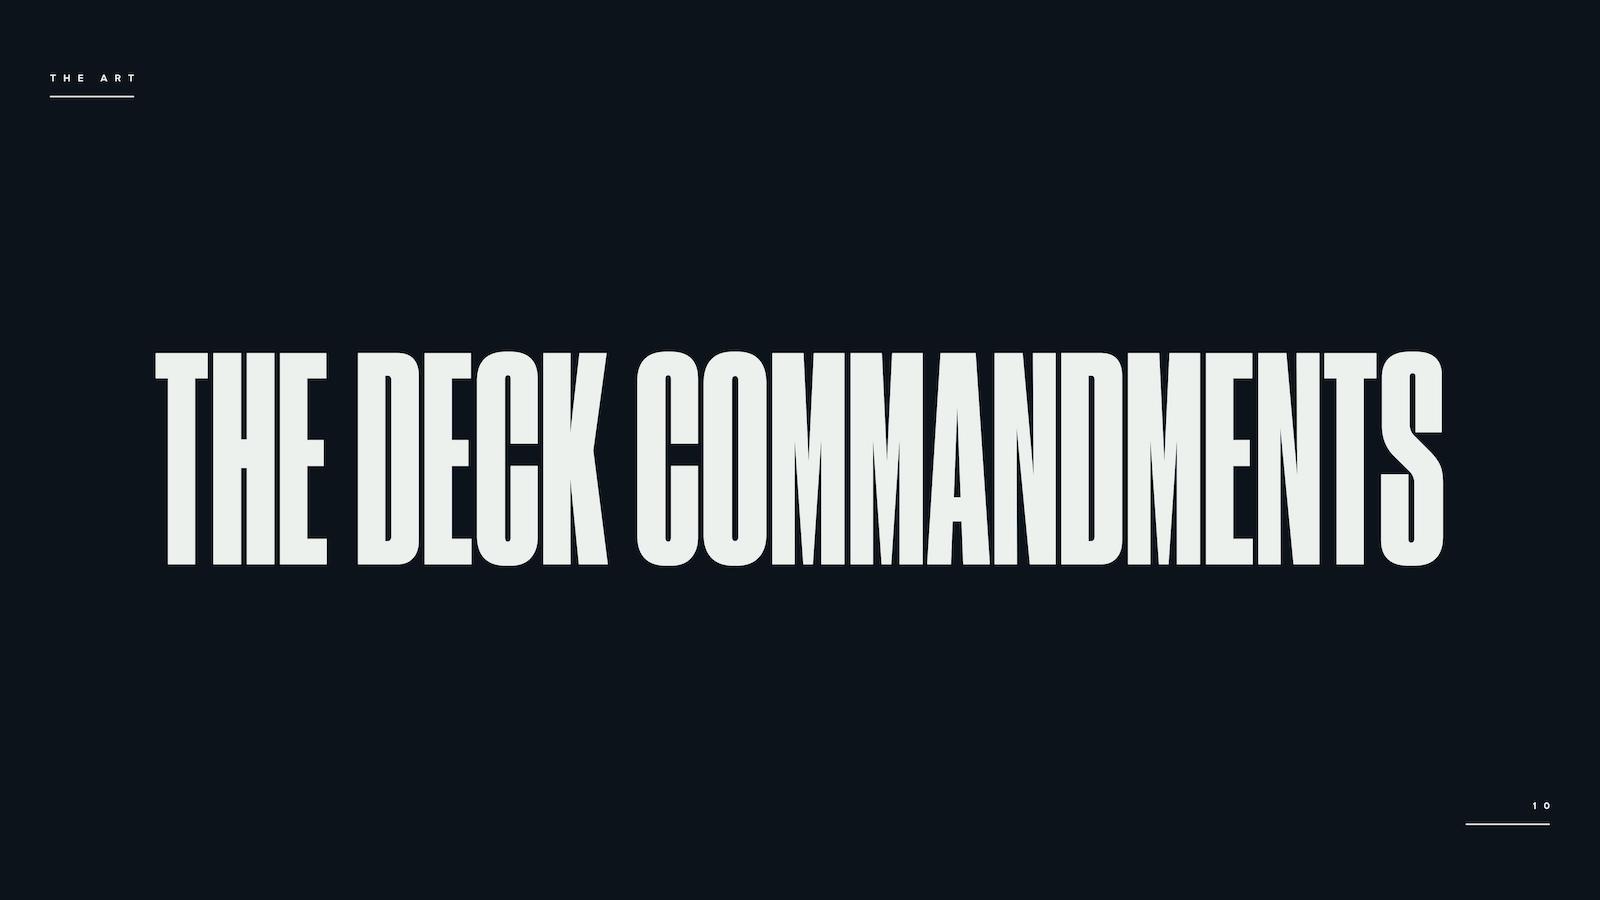 THE DECK COMMANDMENTS